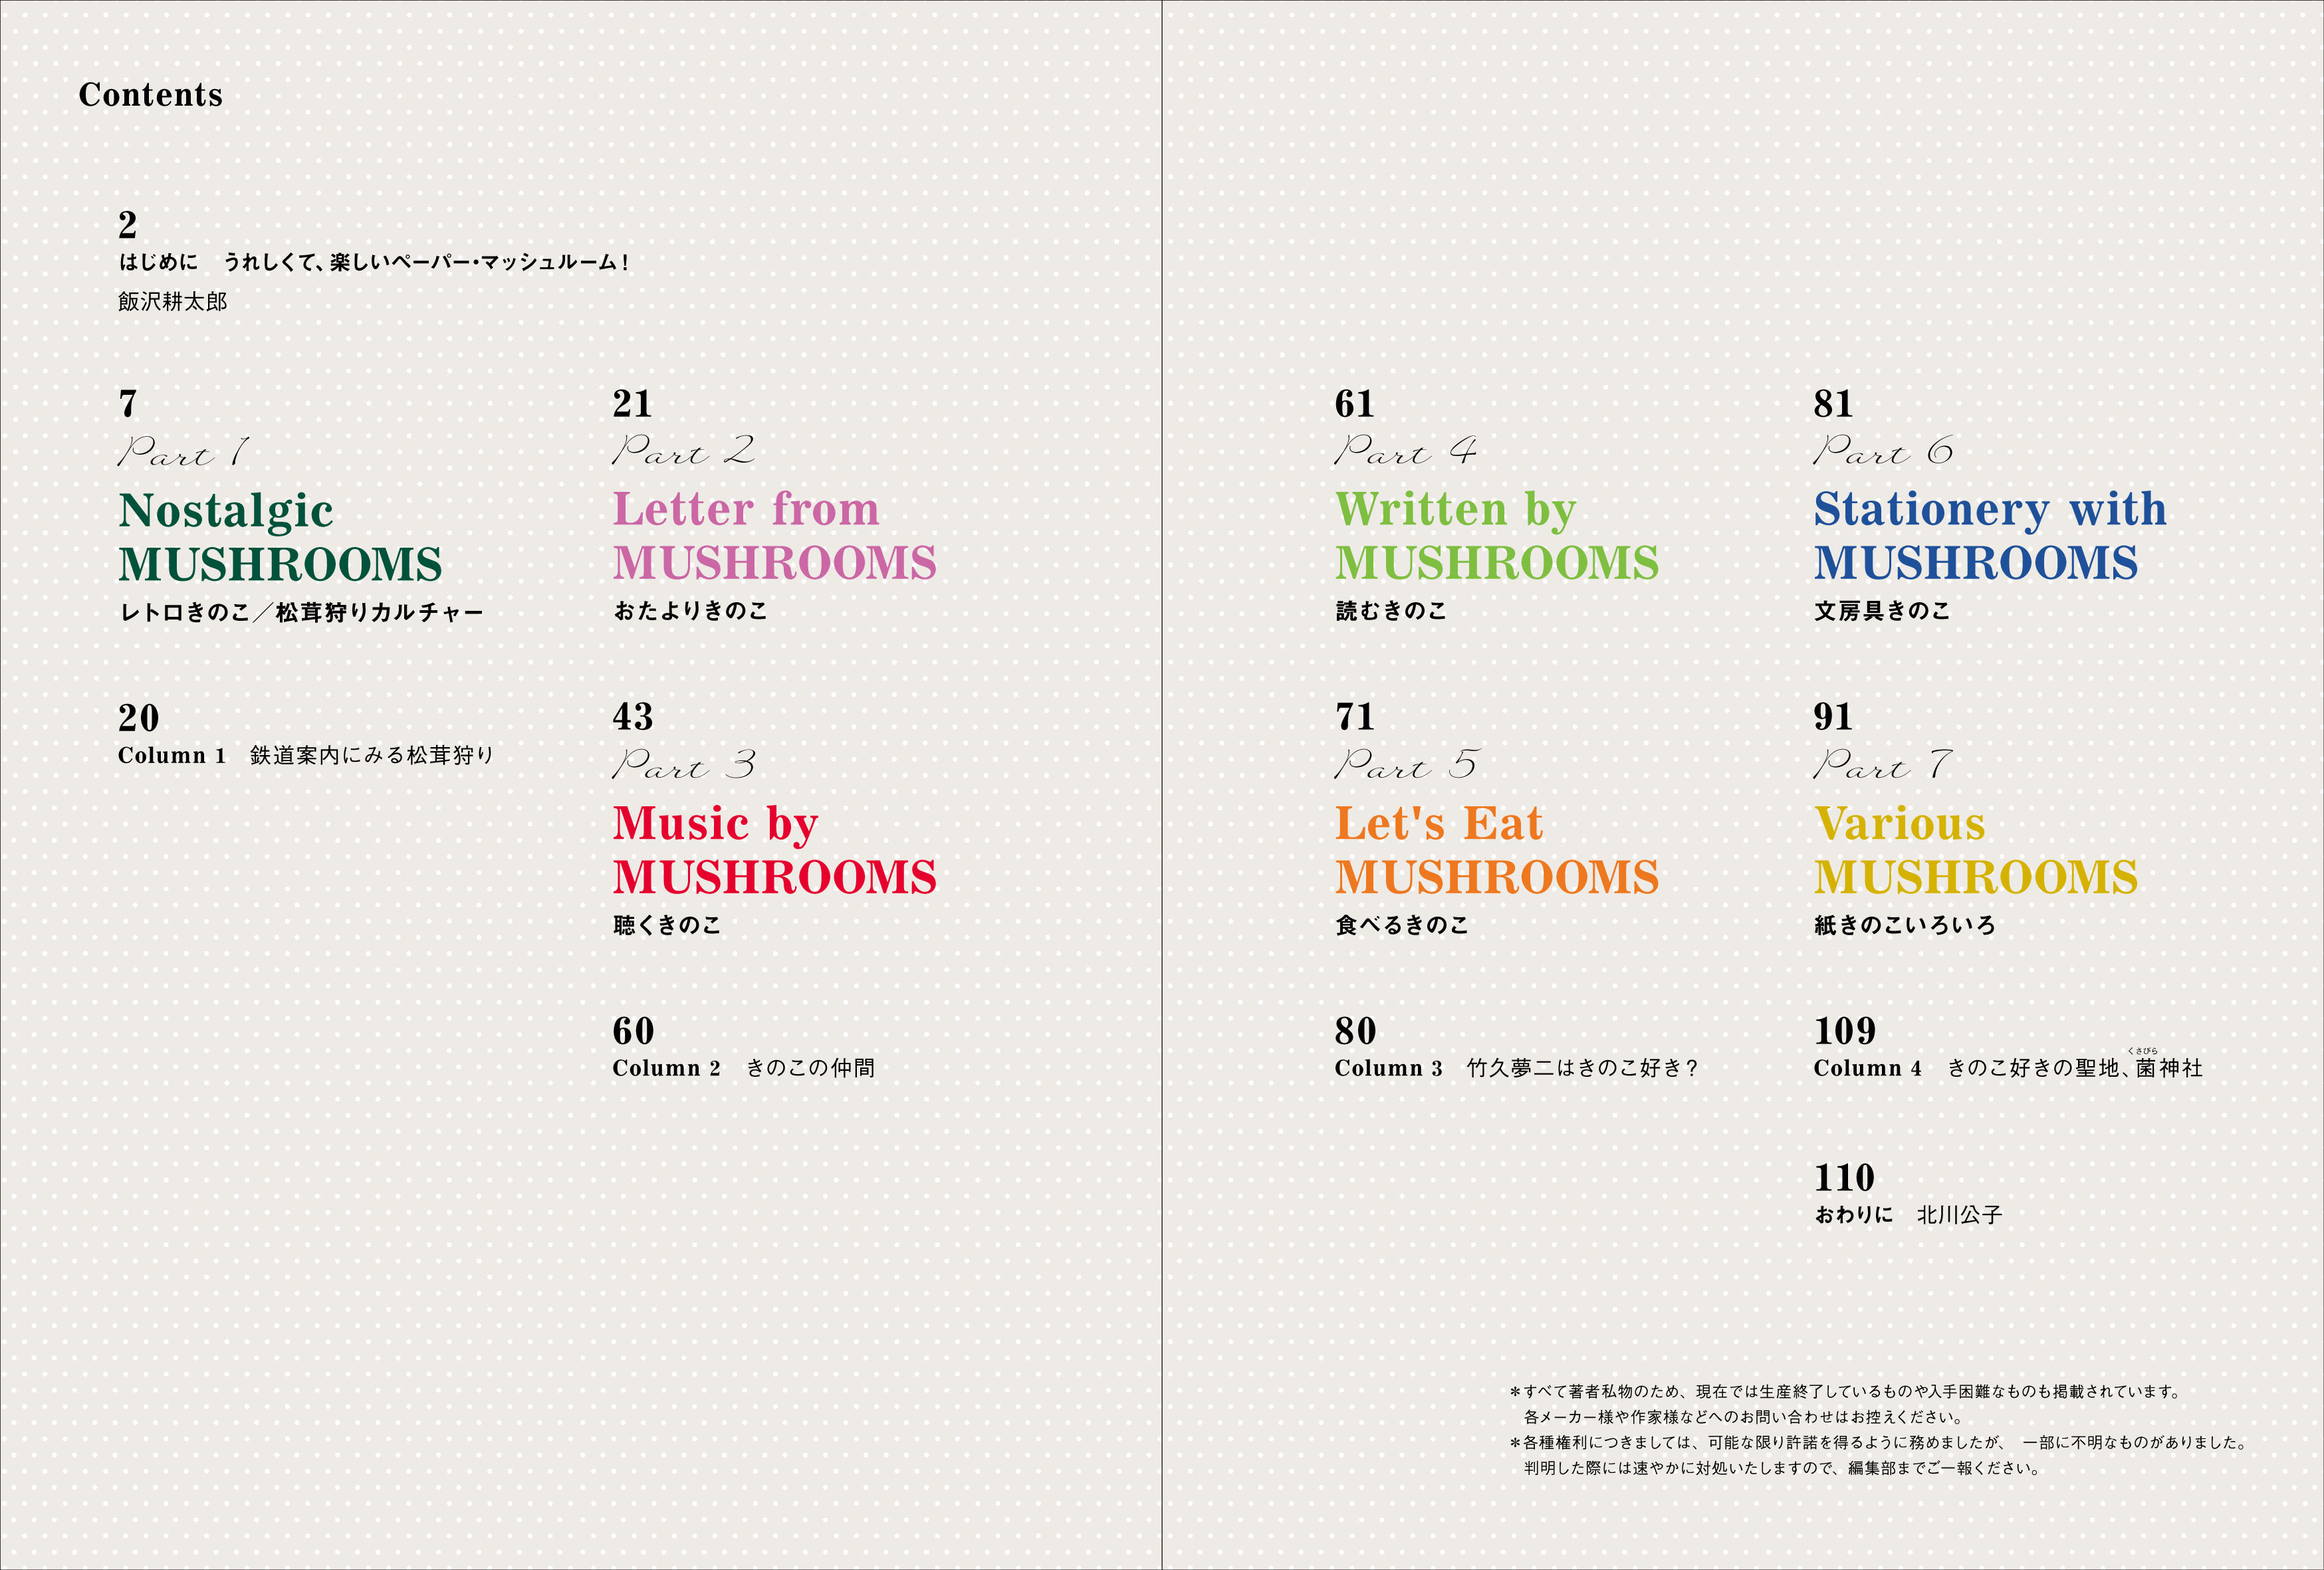 世界のかわいいきのこデザイン 飯沢耕太郎 北川公子 紙ものきのこ図案帖 Du Books ディスクユニオンの出版部門